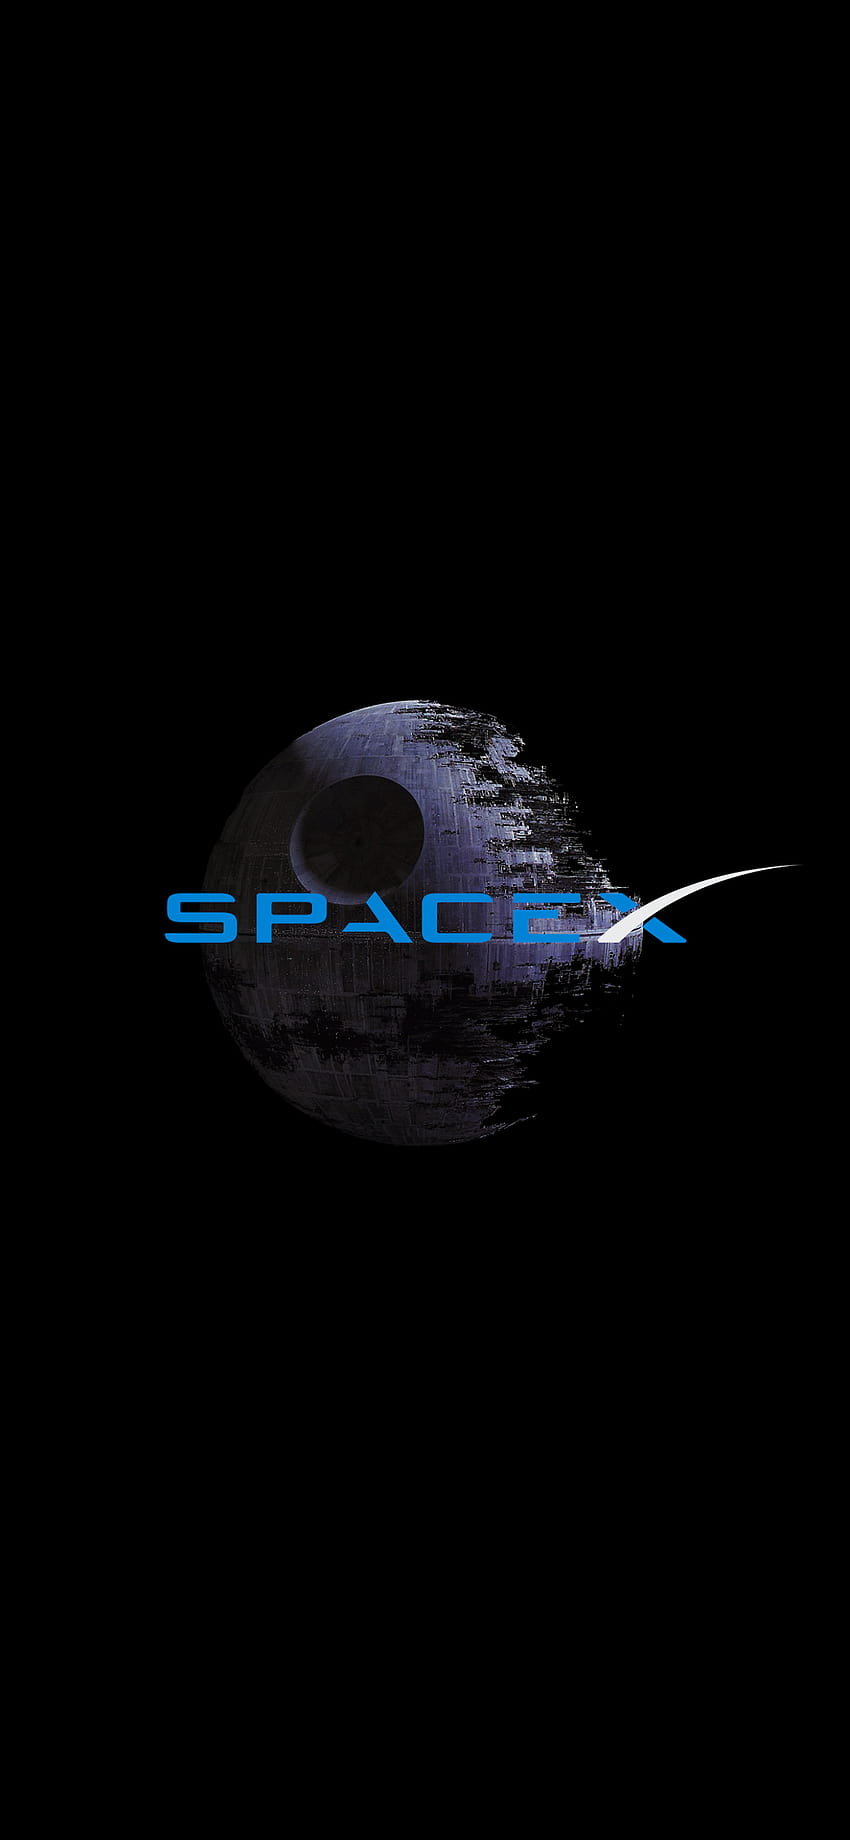 SPACEX GWIAZDA ŚMIERCI AMOLED, logo spacex Tapeta na telefon HD